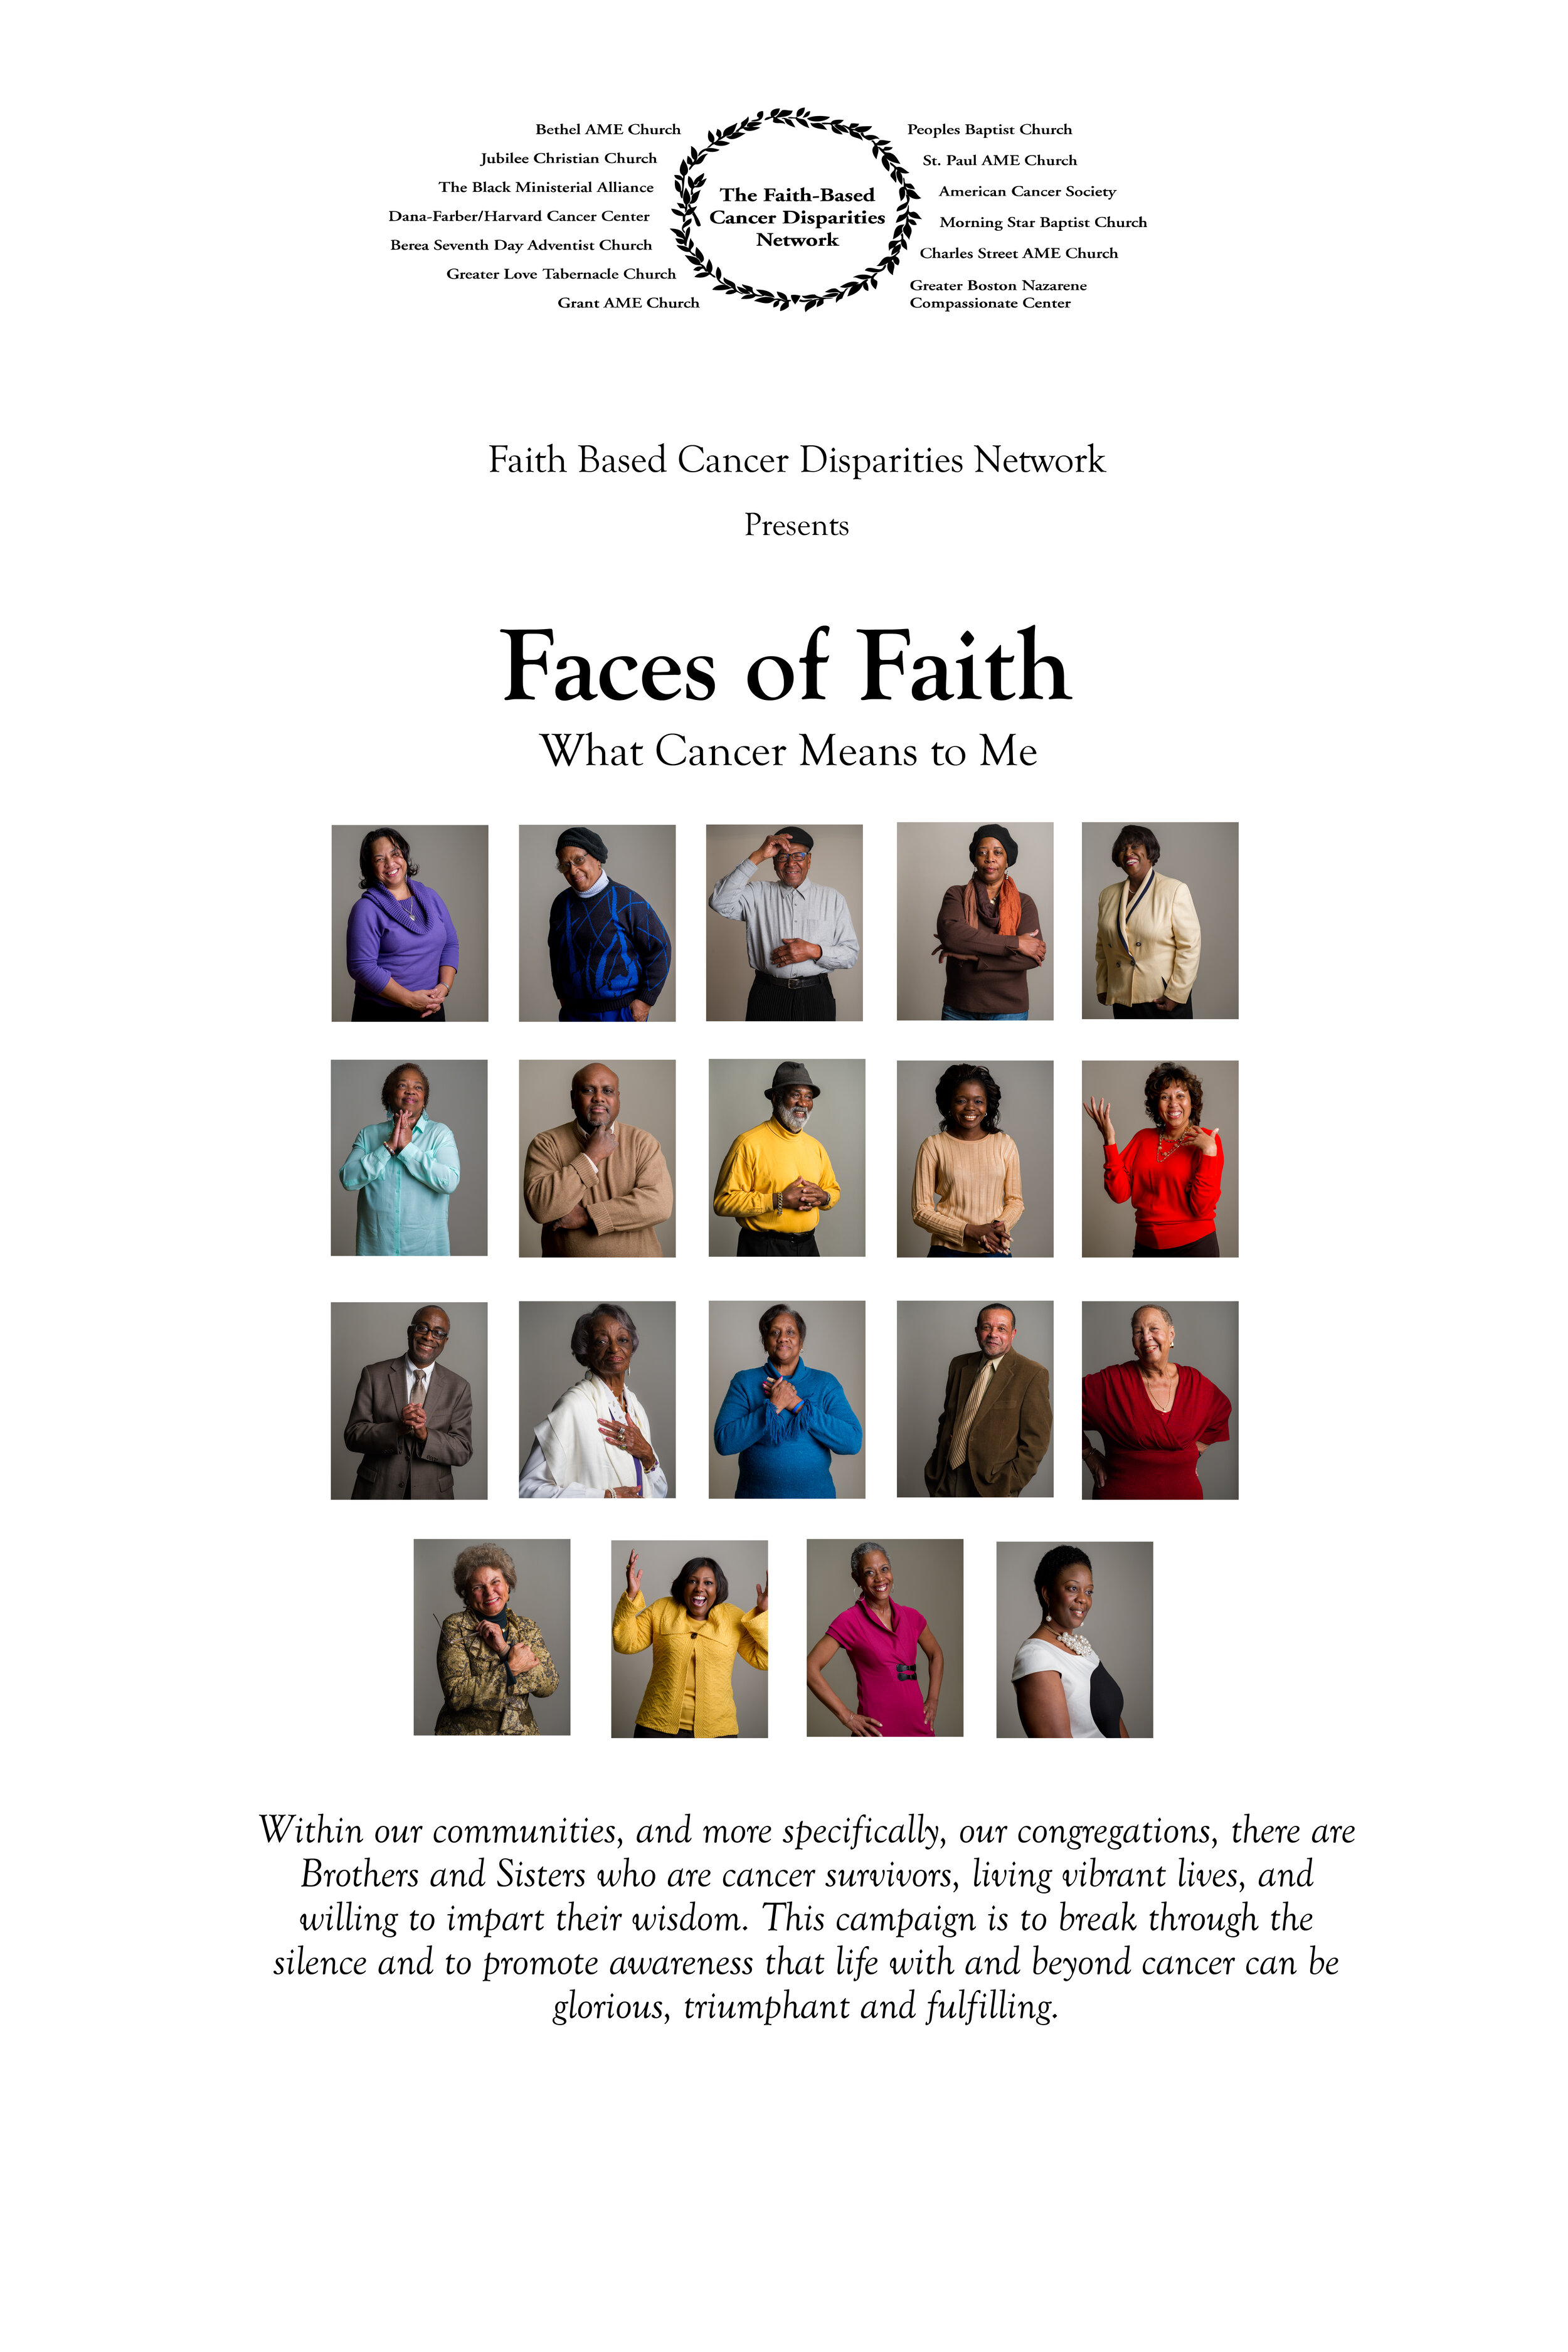 Faces of Faith Board.jpg